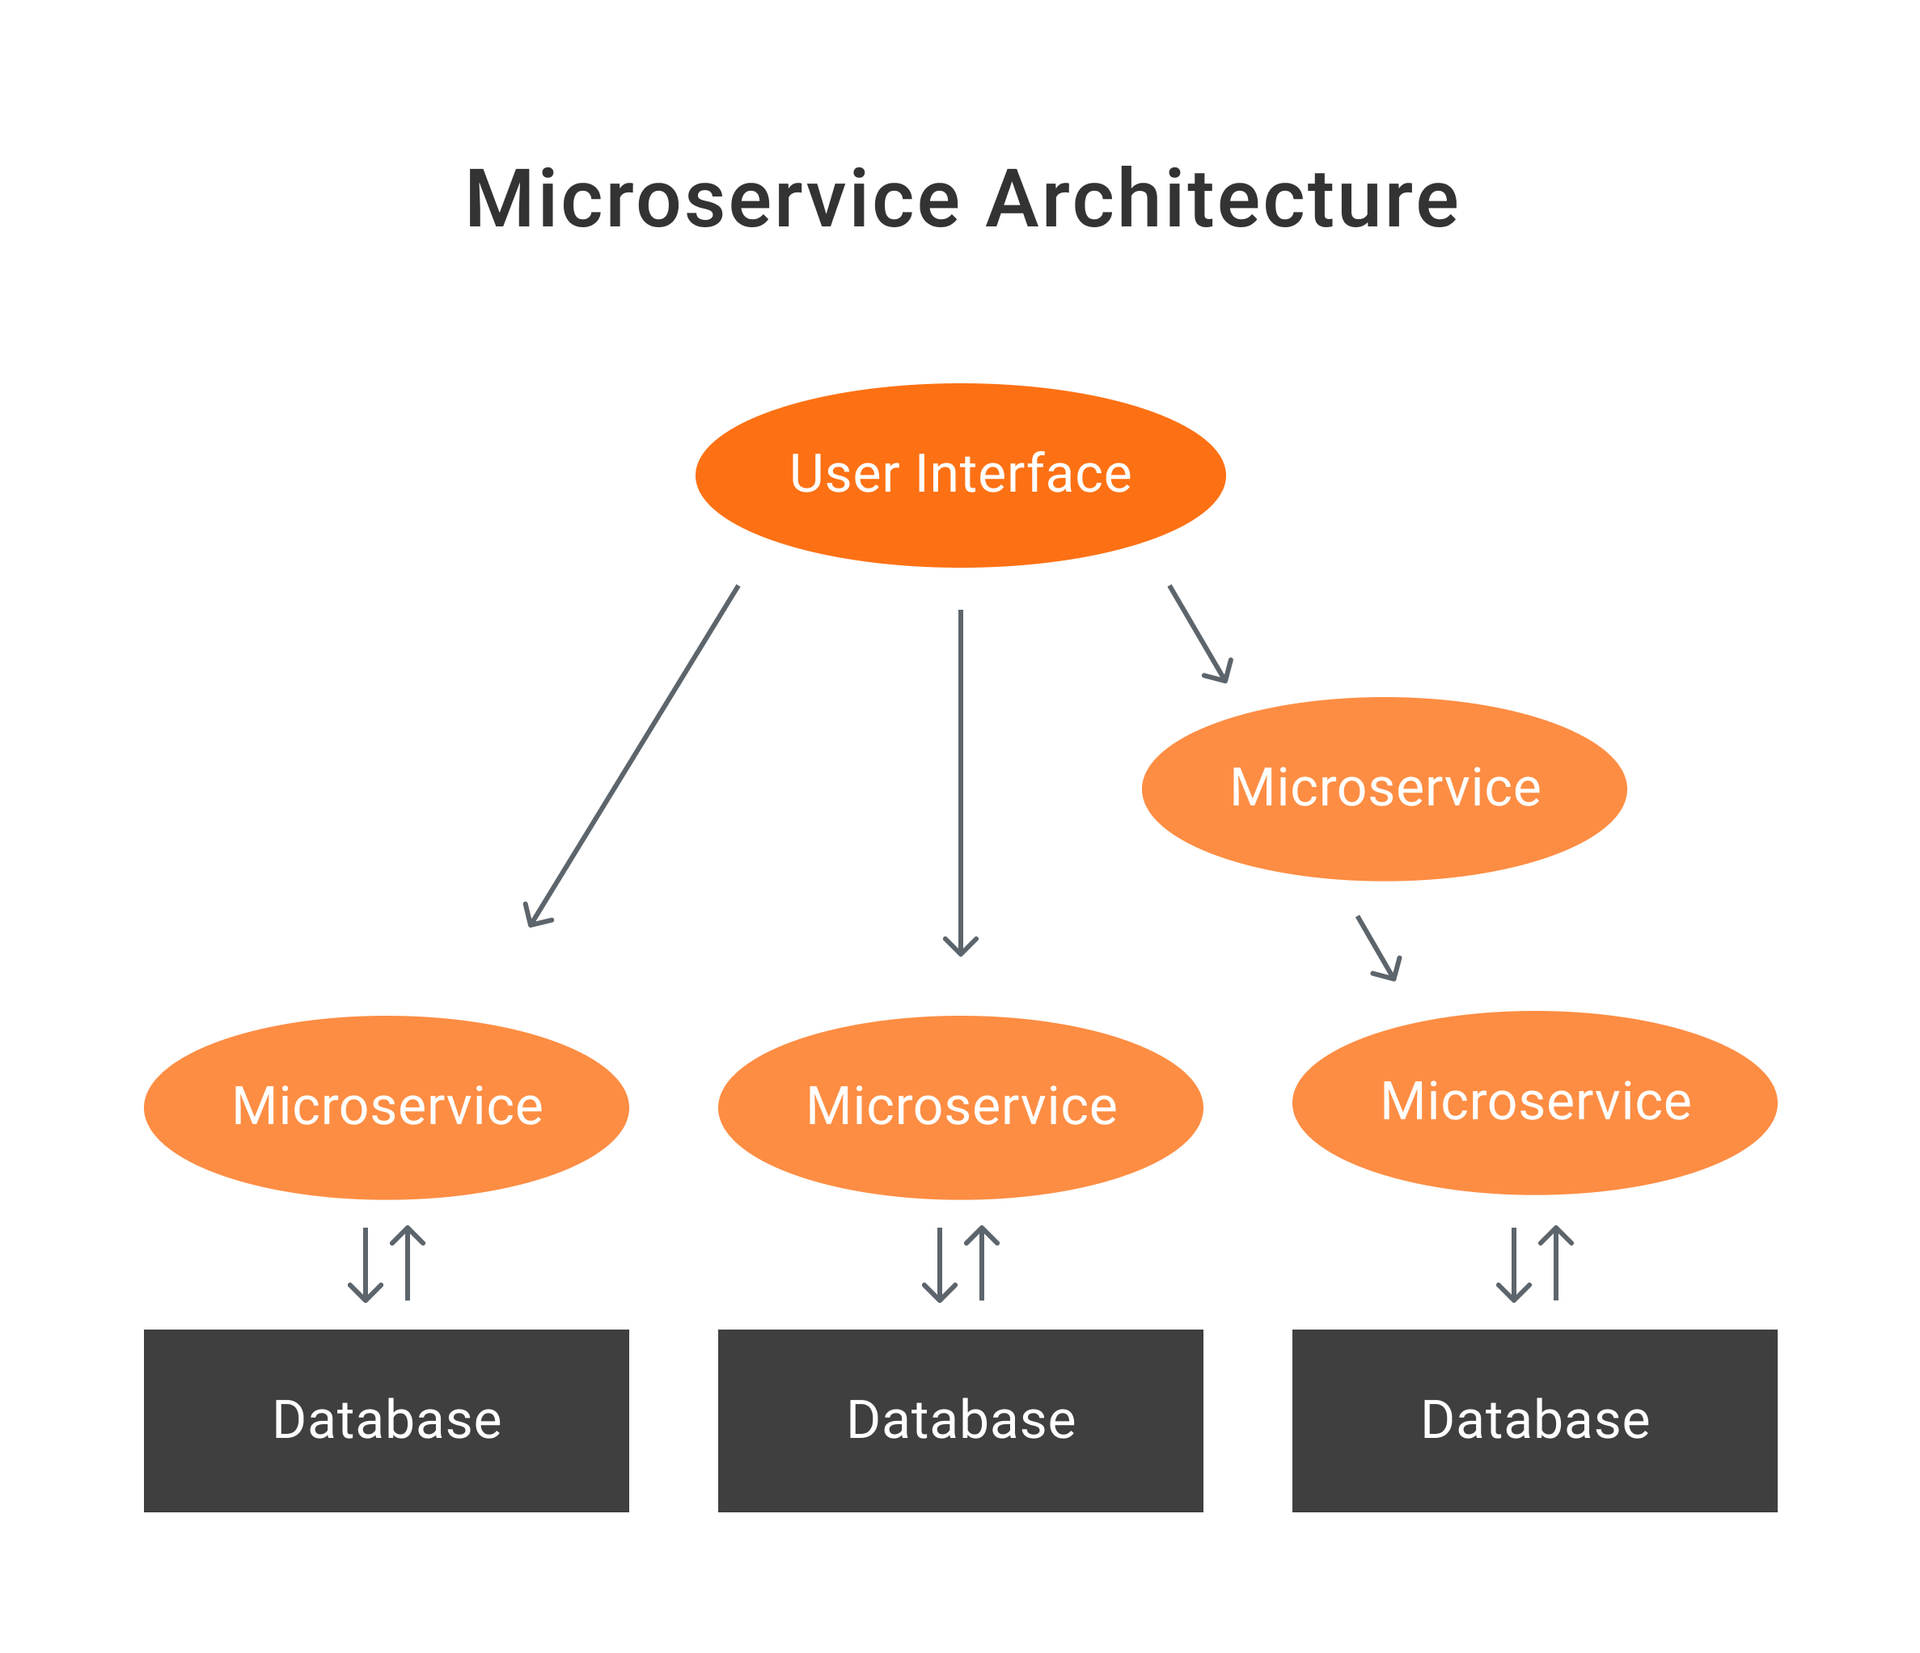 Microservice architecture diagram